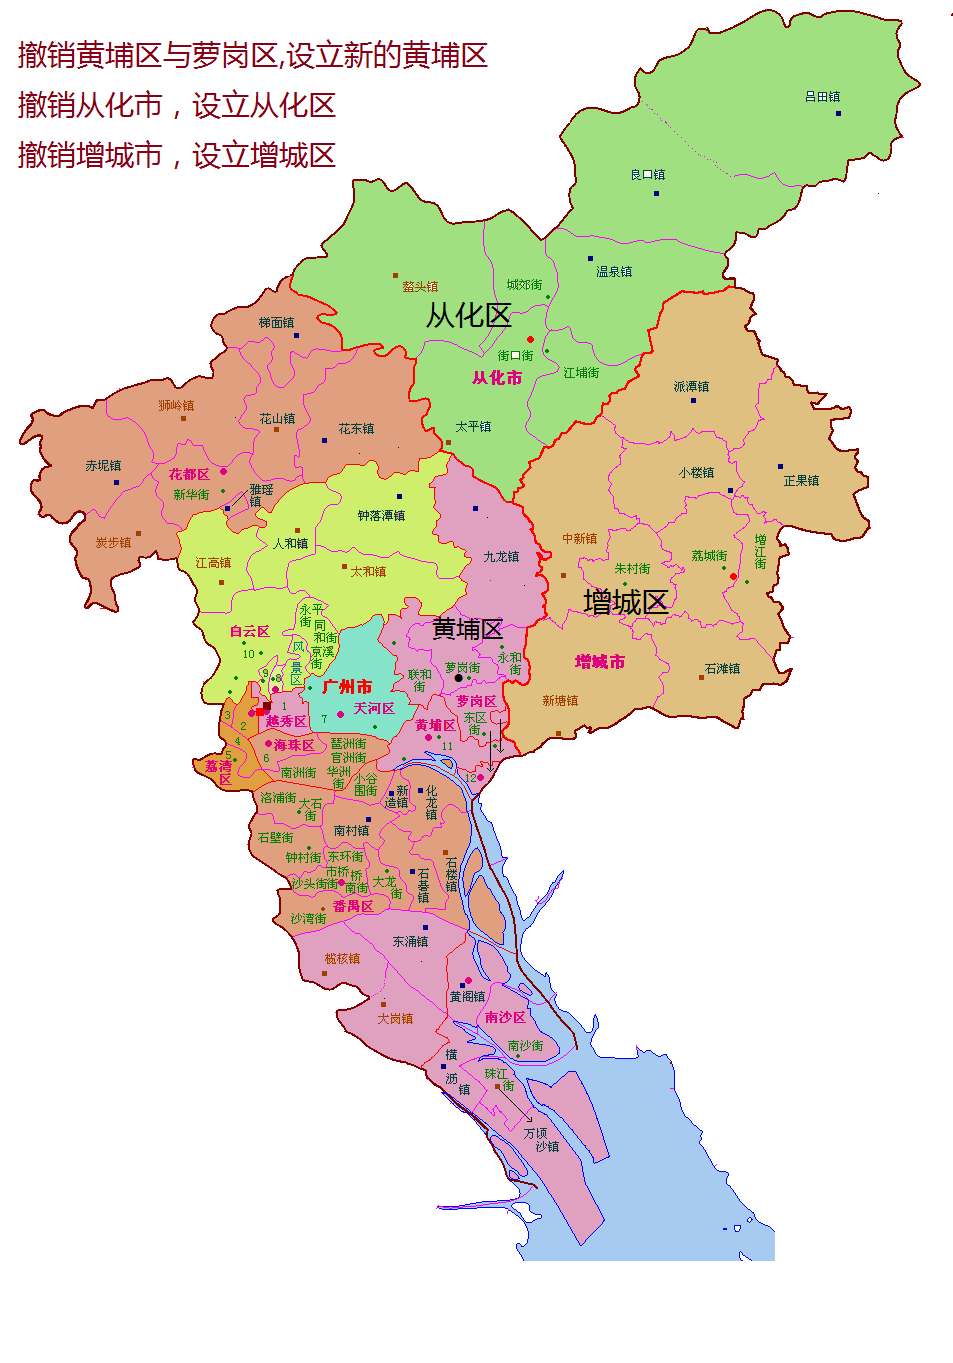 国务院同意广东省调整广州市部分行政区划(增城从化改区,萝岗并入黄埔